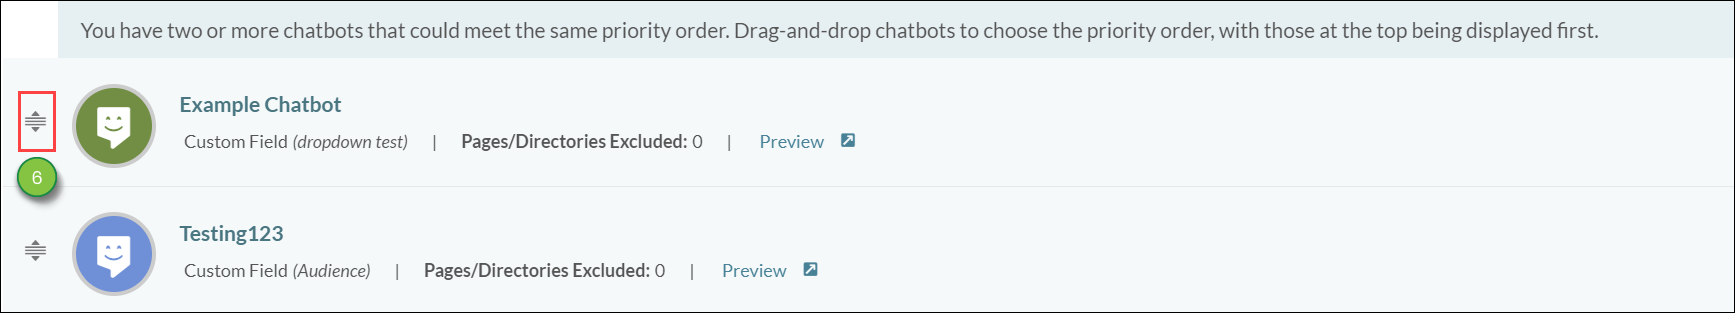 Creating Chatbots